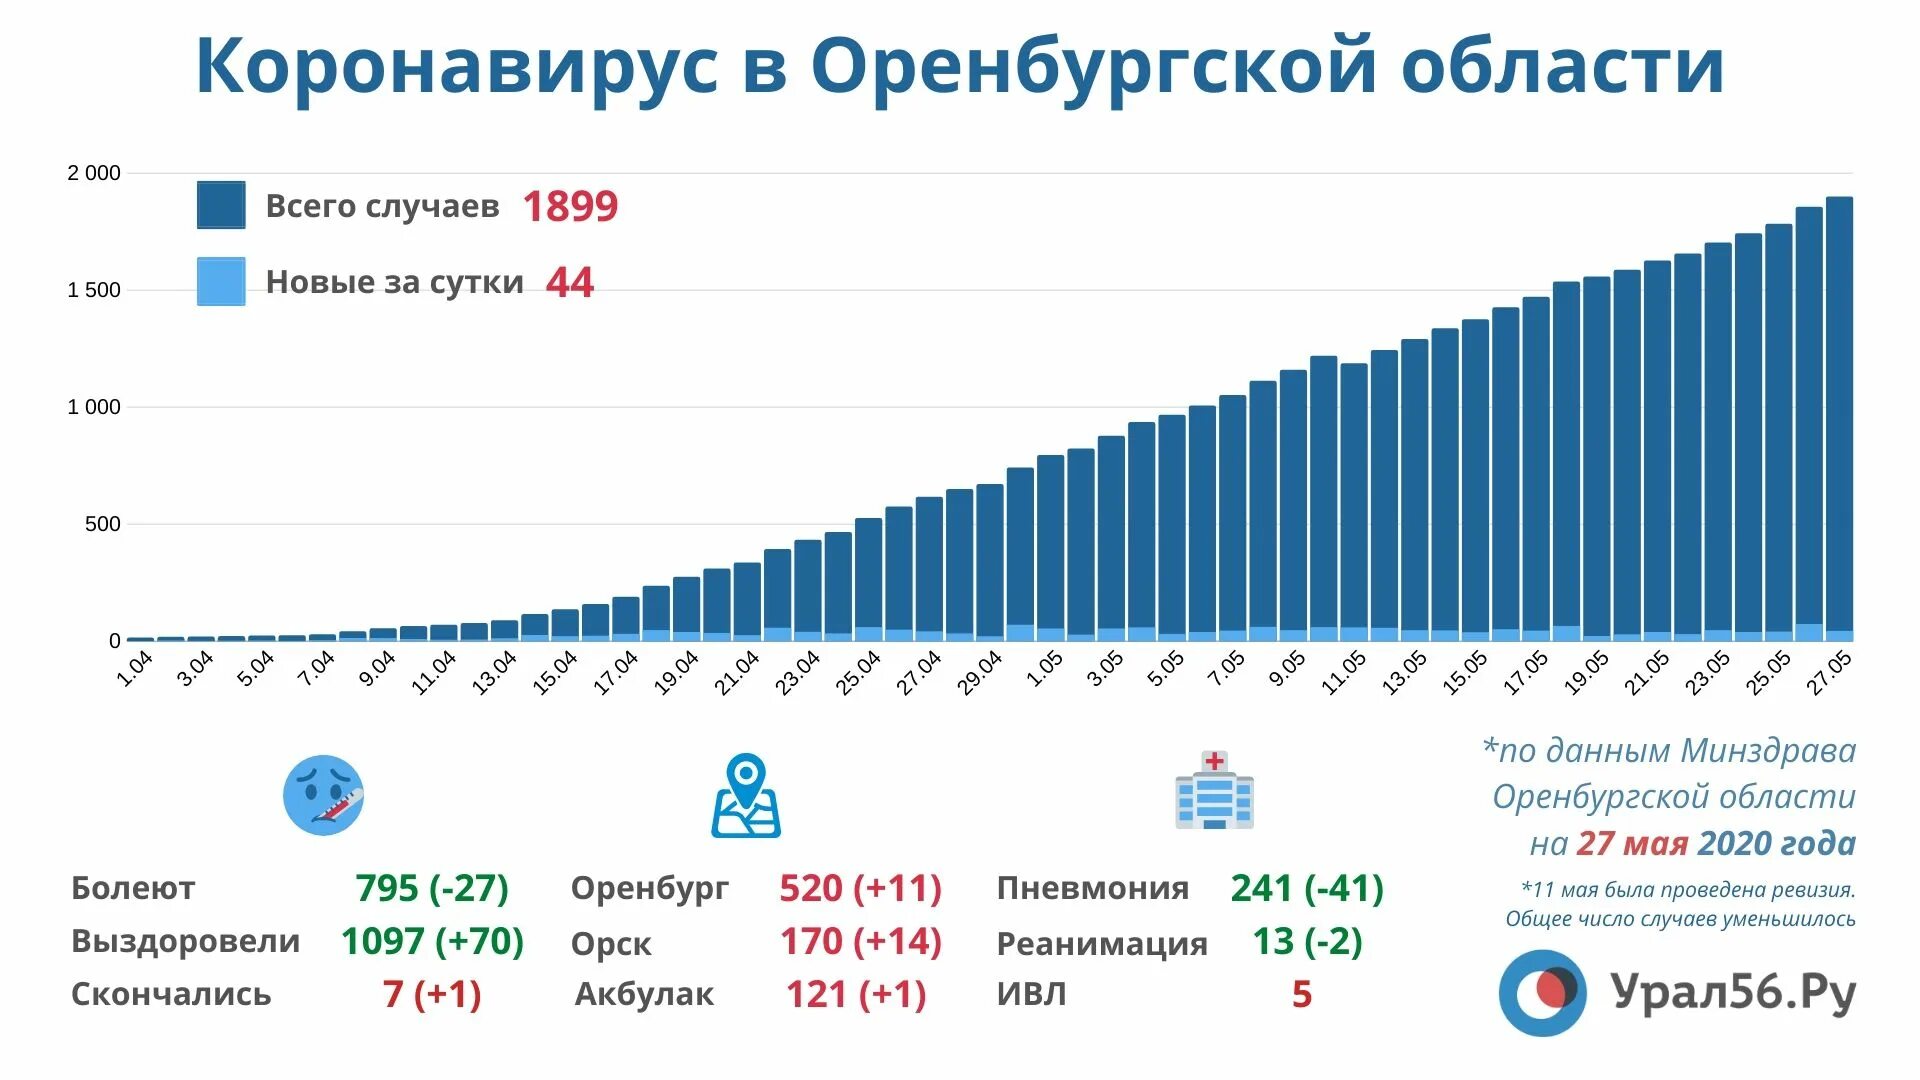 Данные по оренбургской области